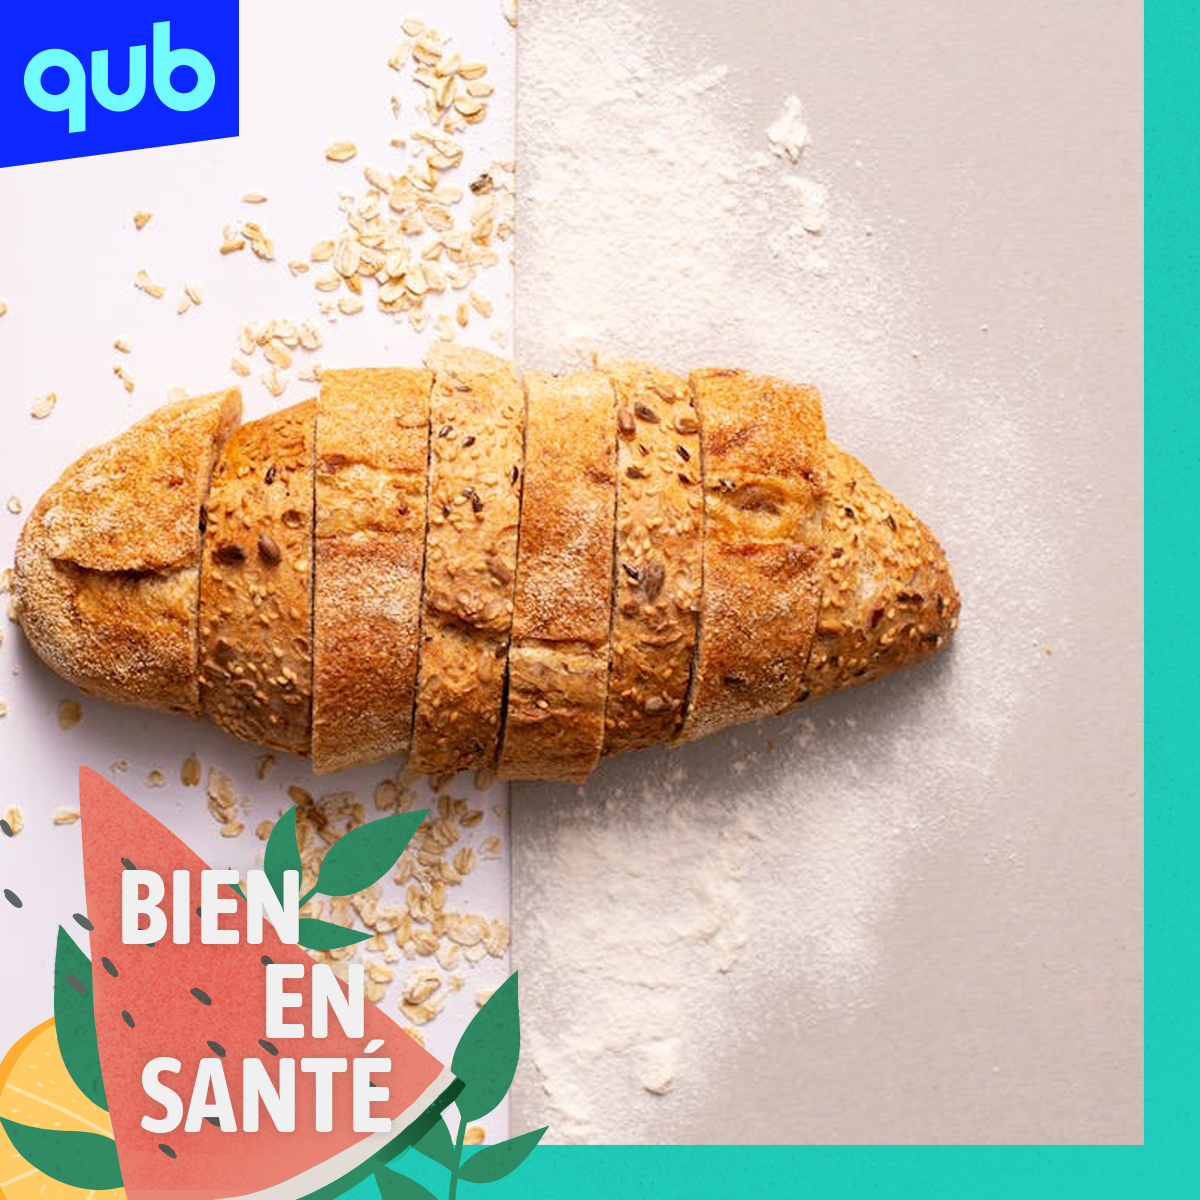 «Le gluten n’est pas toxique pour tous», explique Isabelle Huot